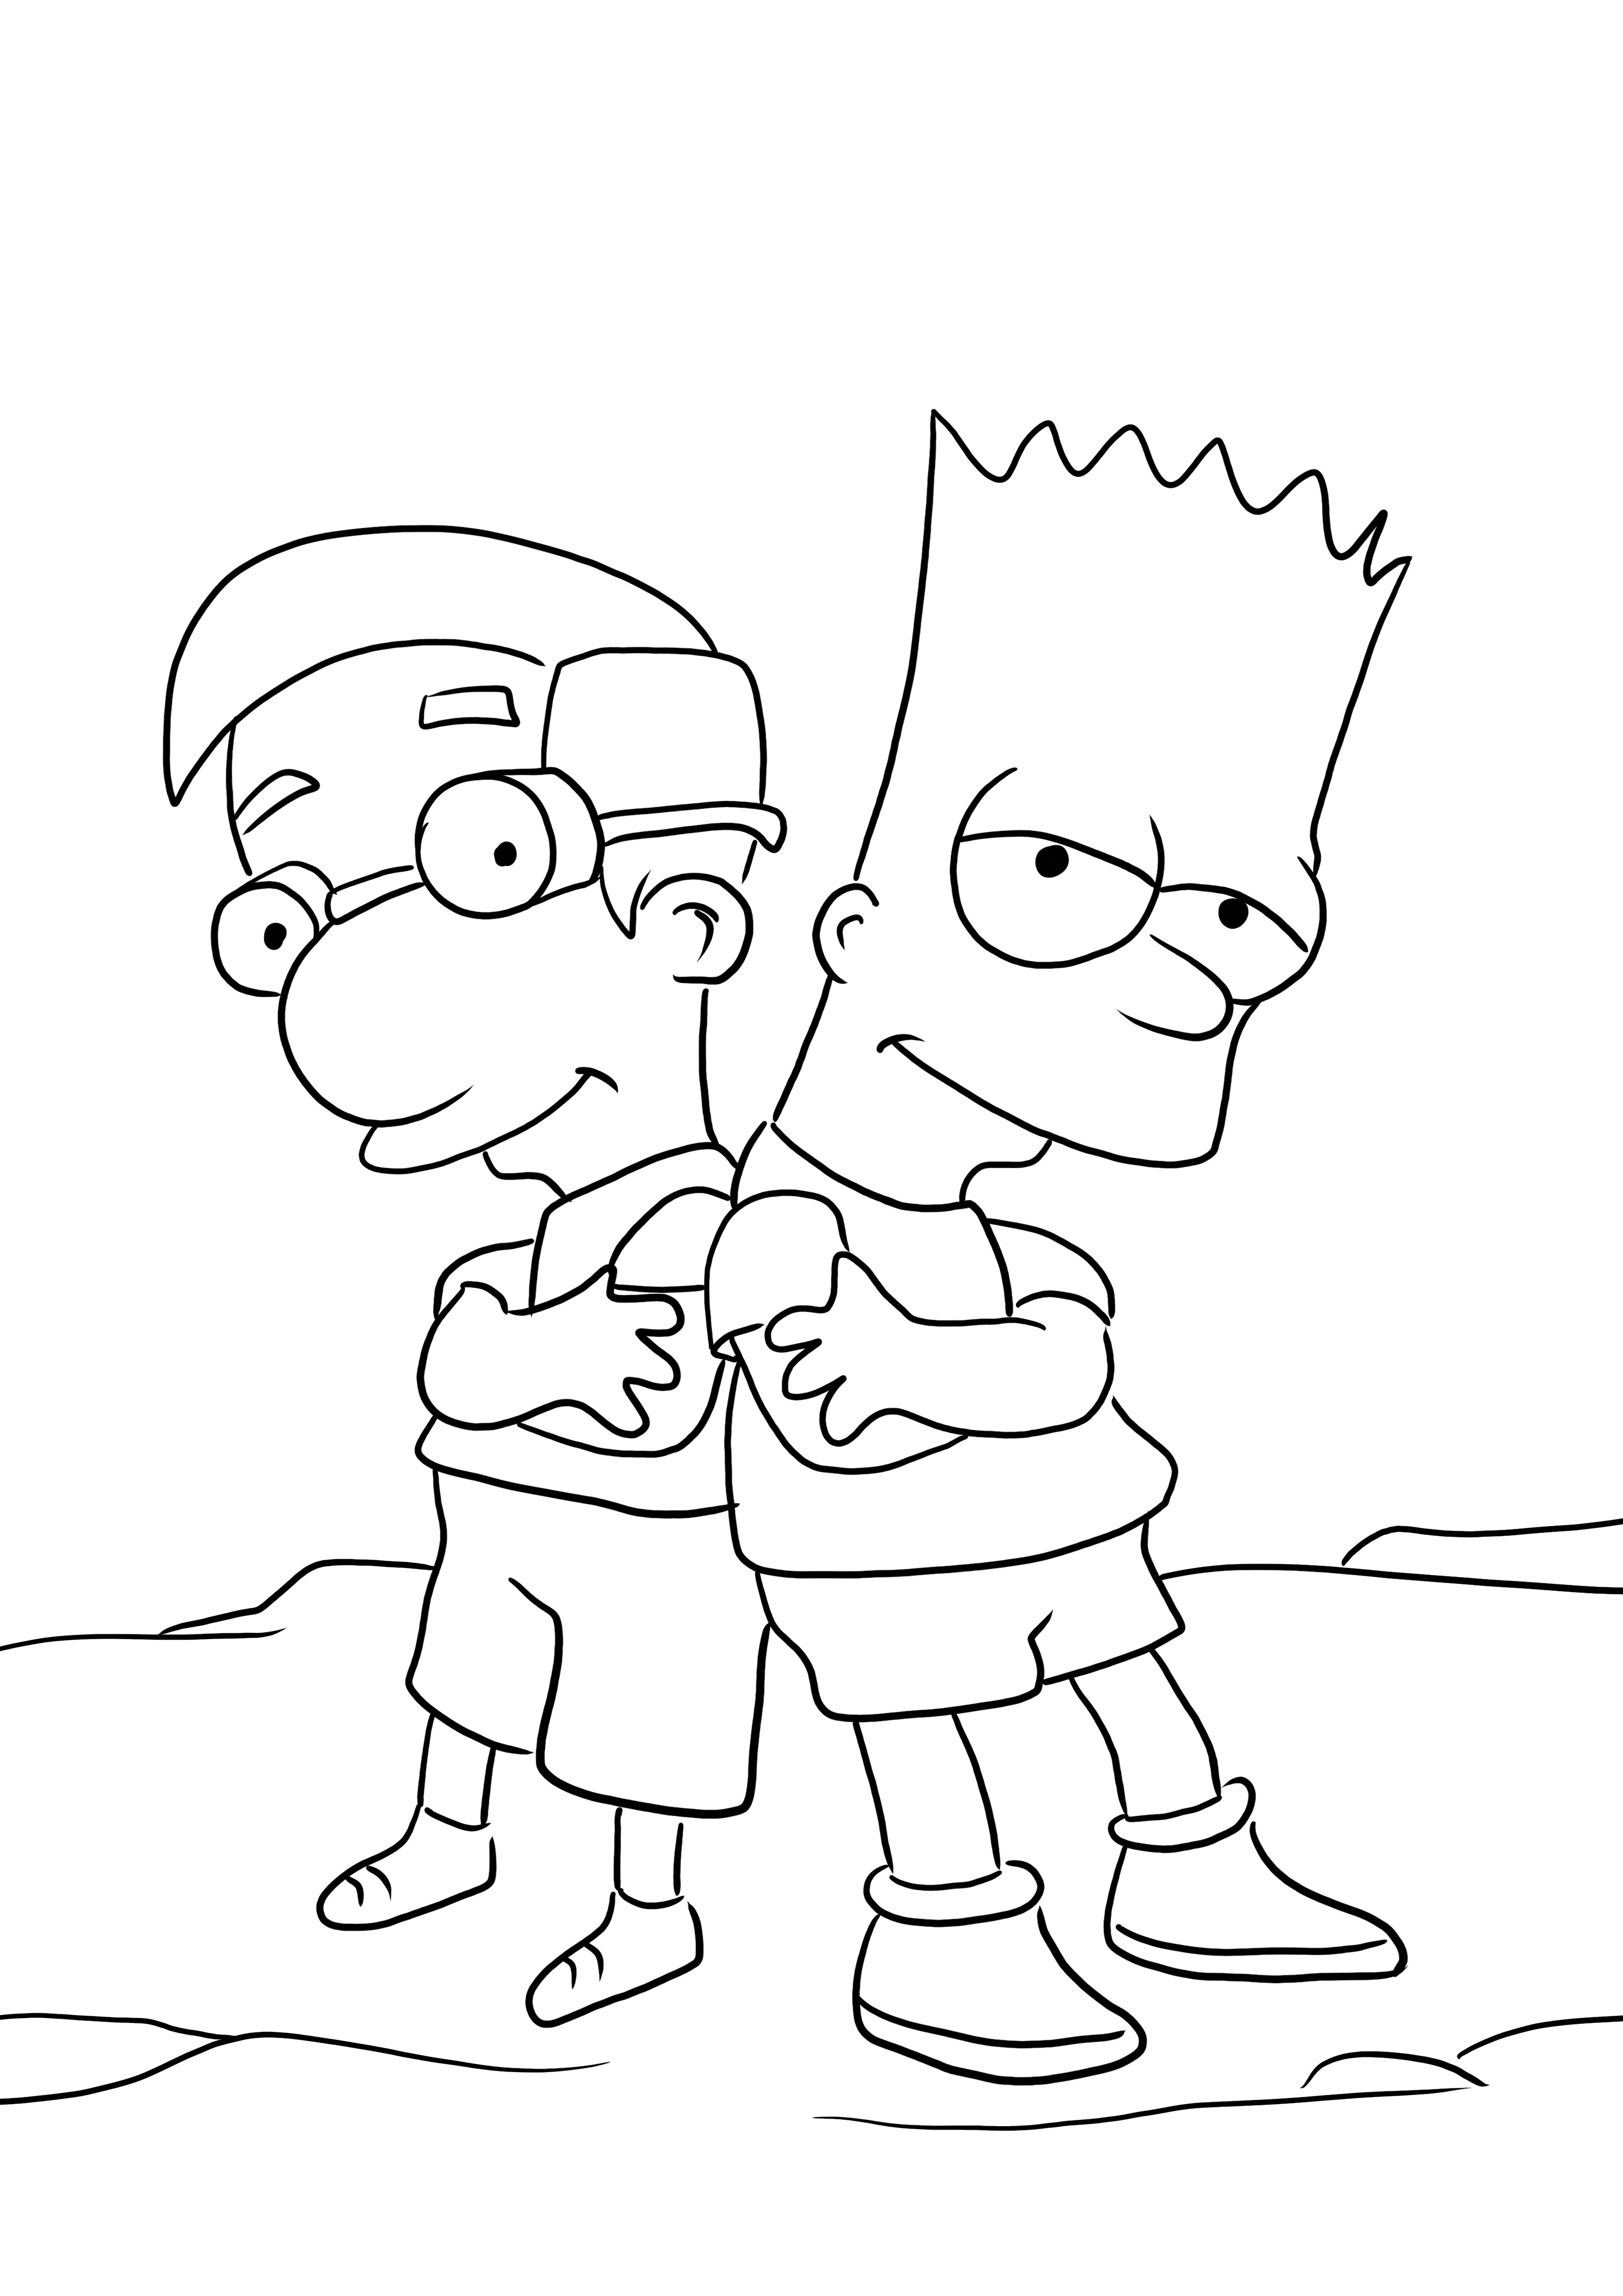 Bart és Millhouse kép színezéséhez és ingyenes letöltéséhez